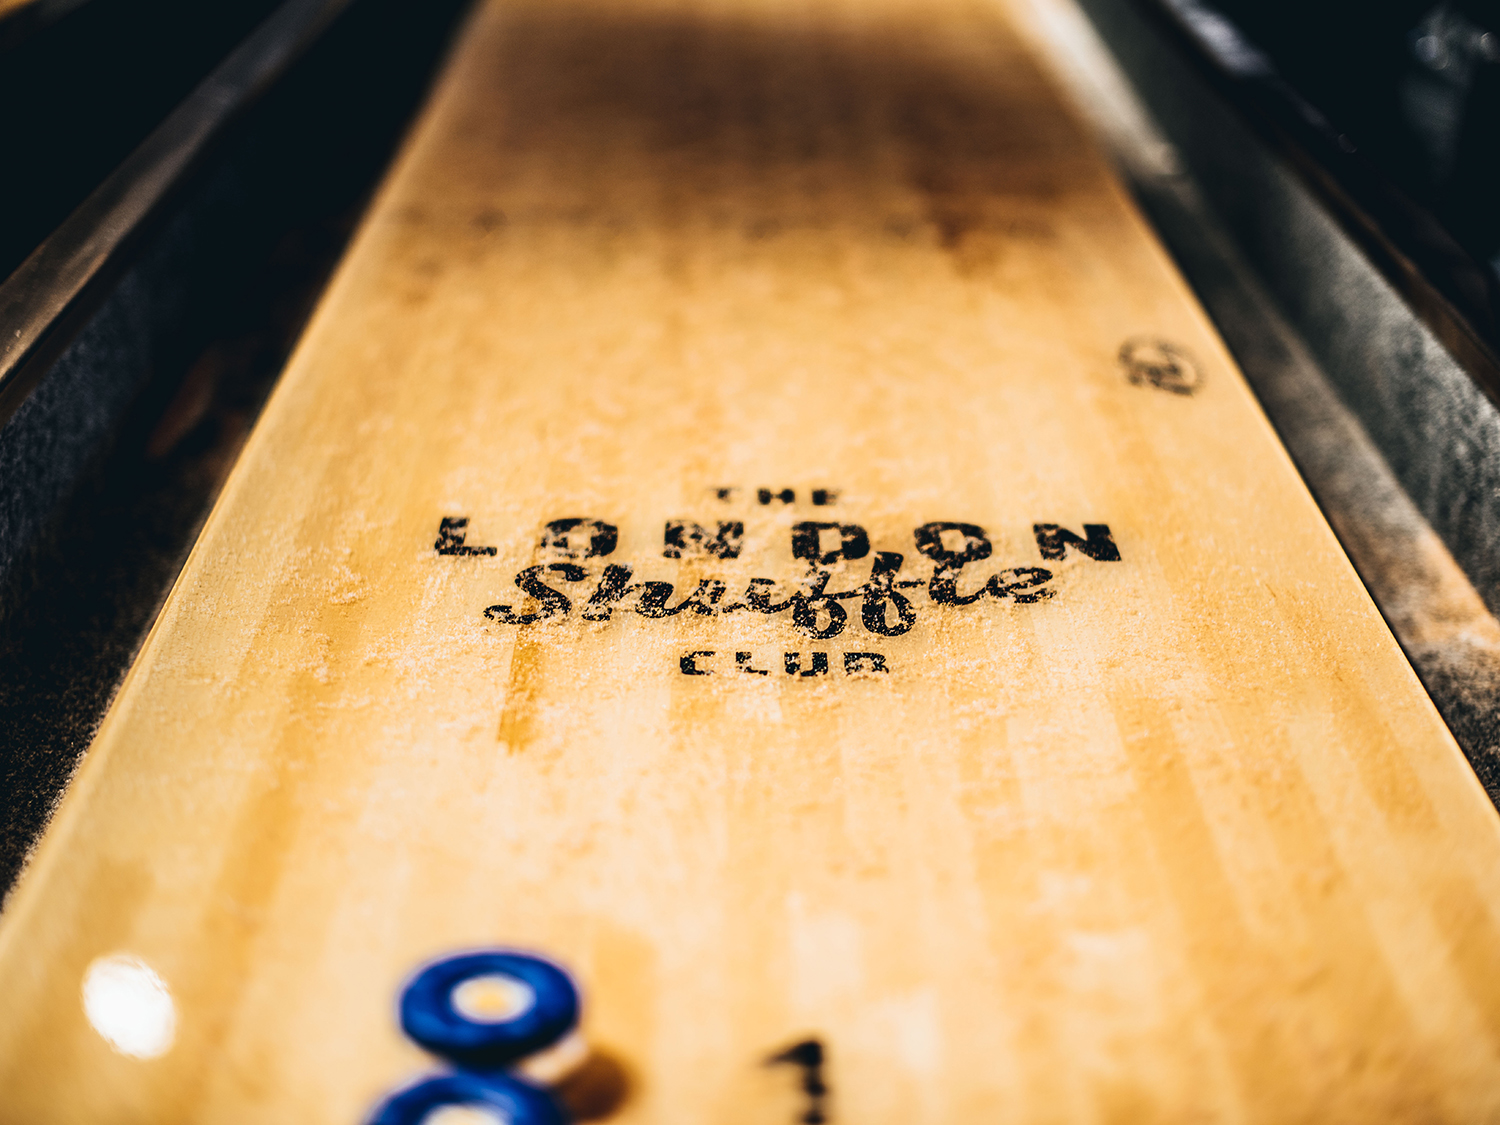 Shuffleboarding at The London Shuffle Club Things to do in London photo